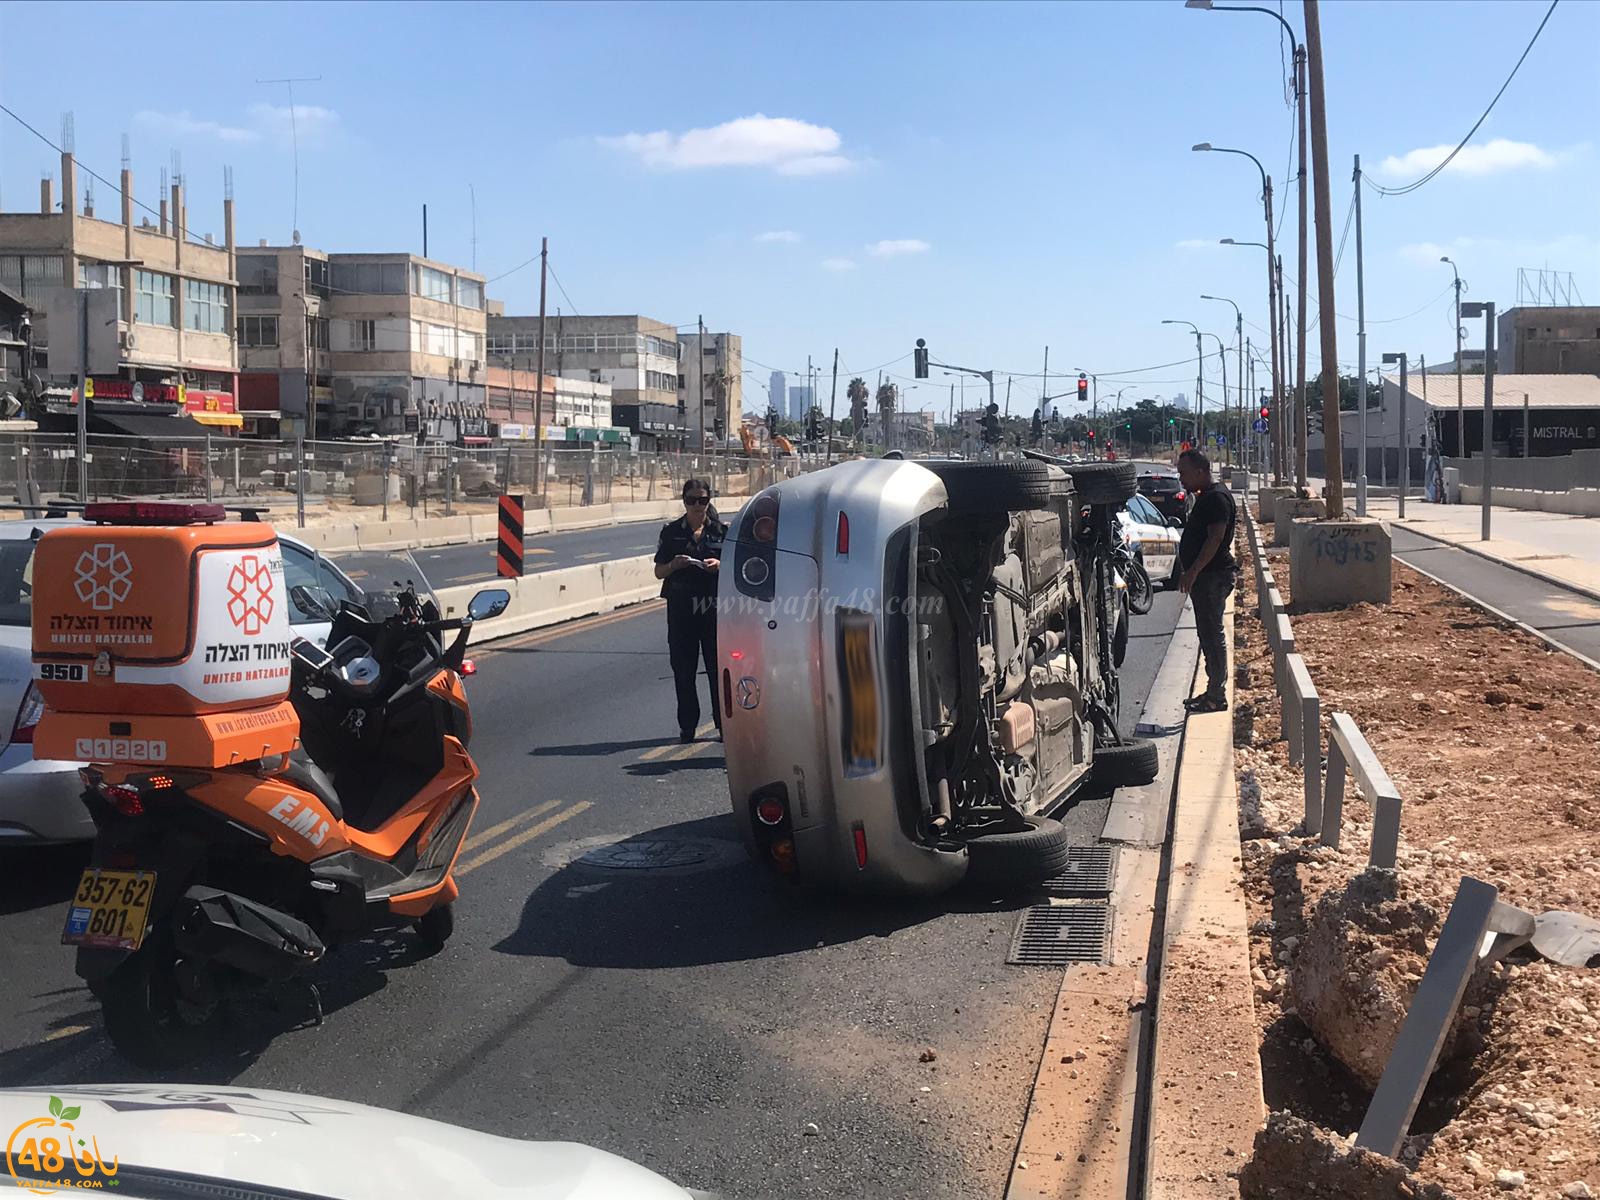 فيديو: اصابة طفيفة لسائق اثر انقلاب مركبة في مدينة يافا 